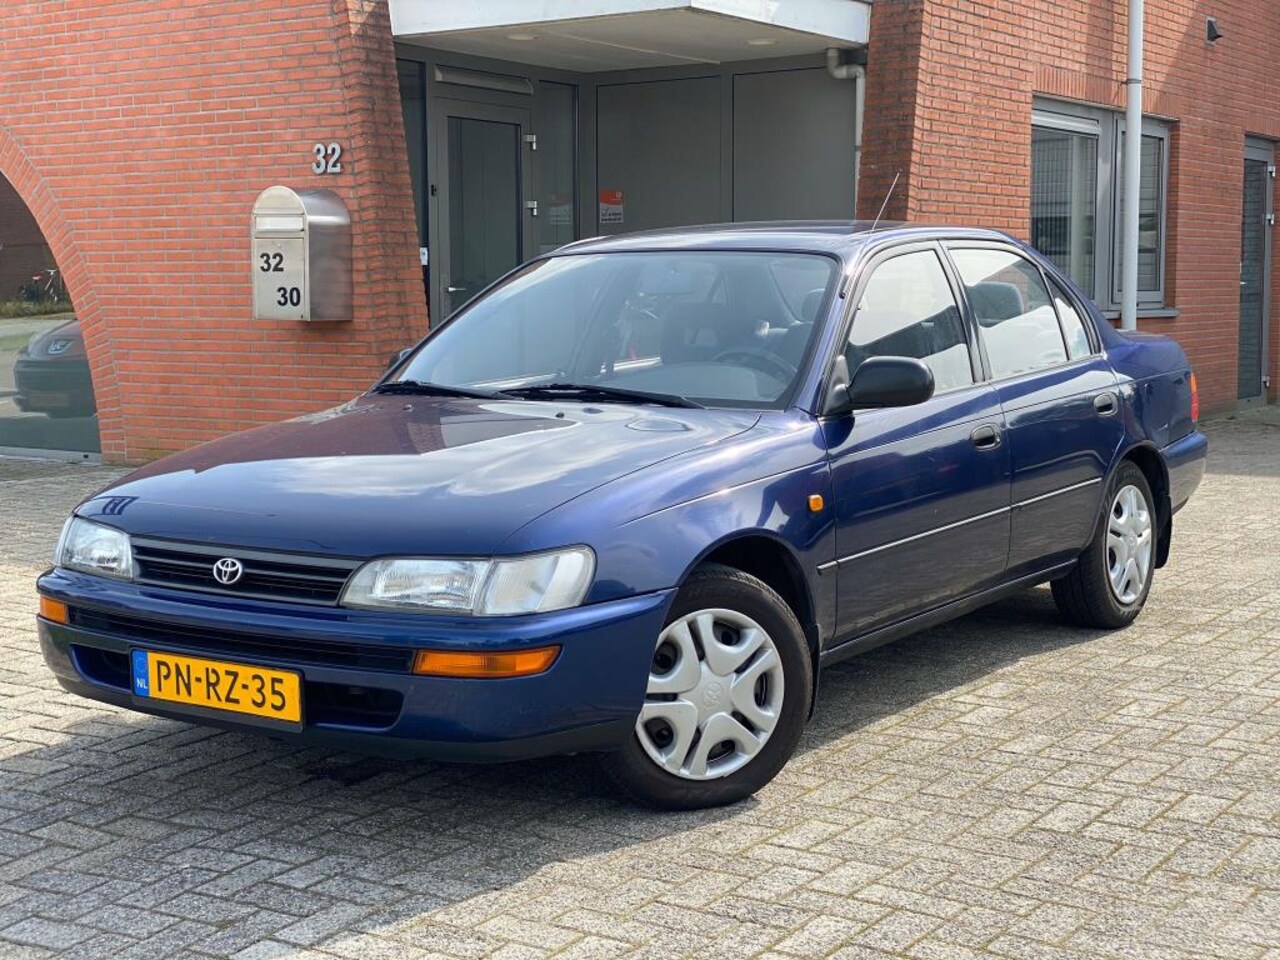 Snelkoppelingen Afslachten Vervolgen Toyota Corolla 2.0 diesel , bj : 1996 , airco 1996 Diesel - Occasion te koop  op AutoWereld.nl